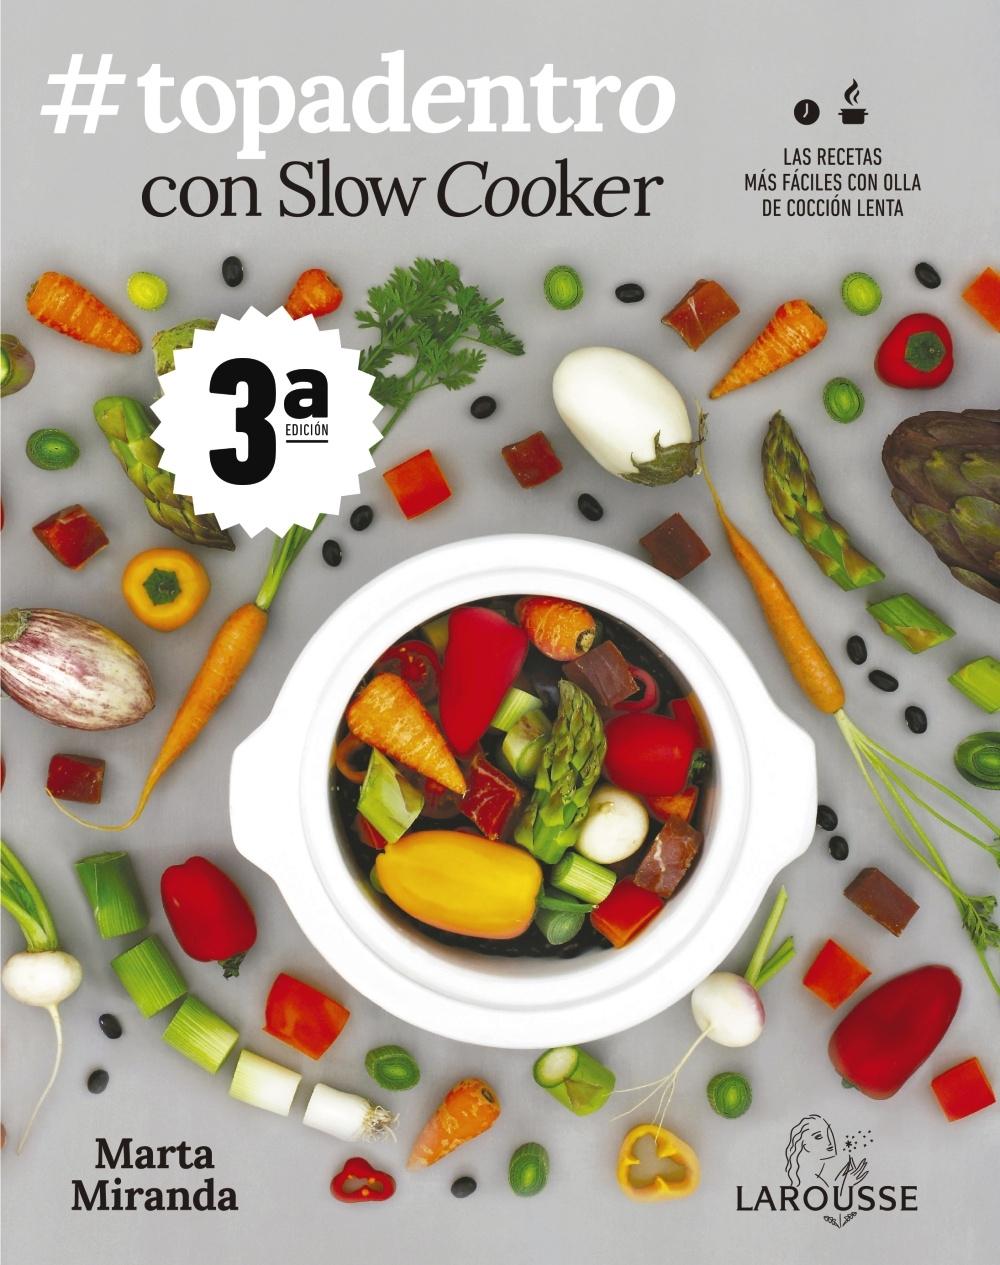 #topadentro con Slow Cooker "Las recetas más fáciles con olla de cocción lenta"